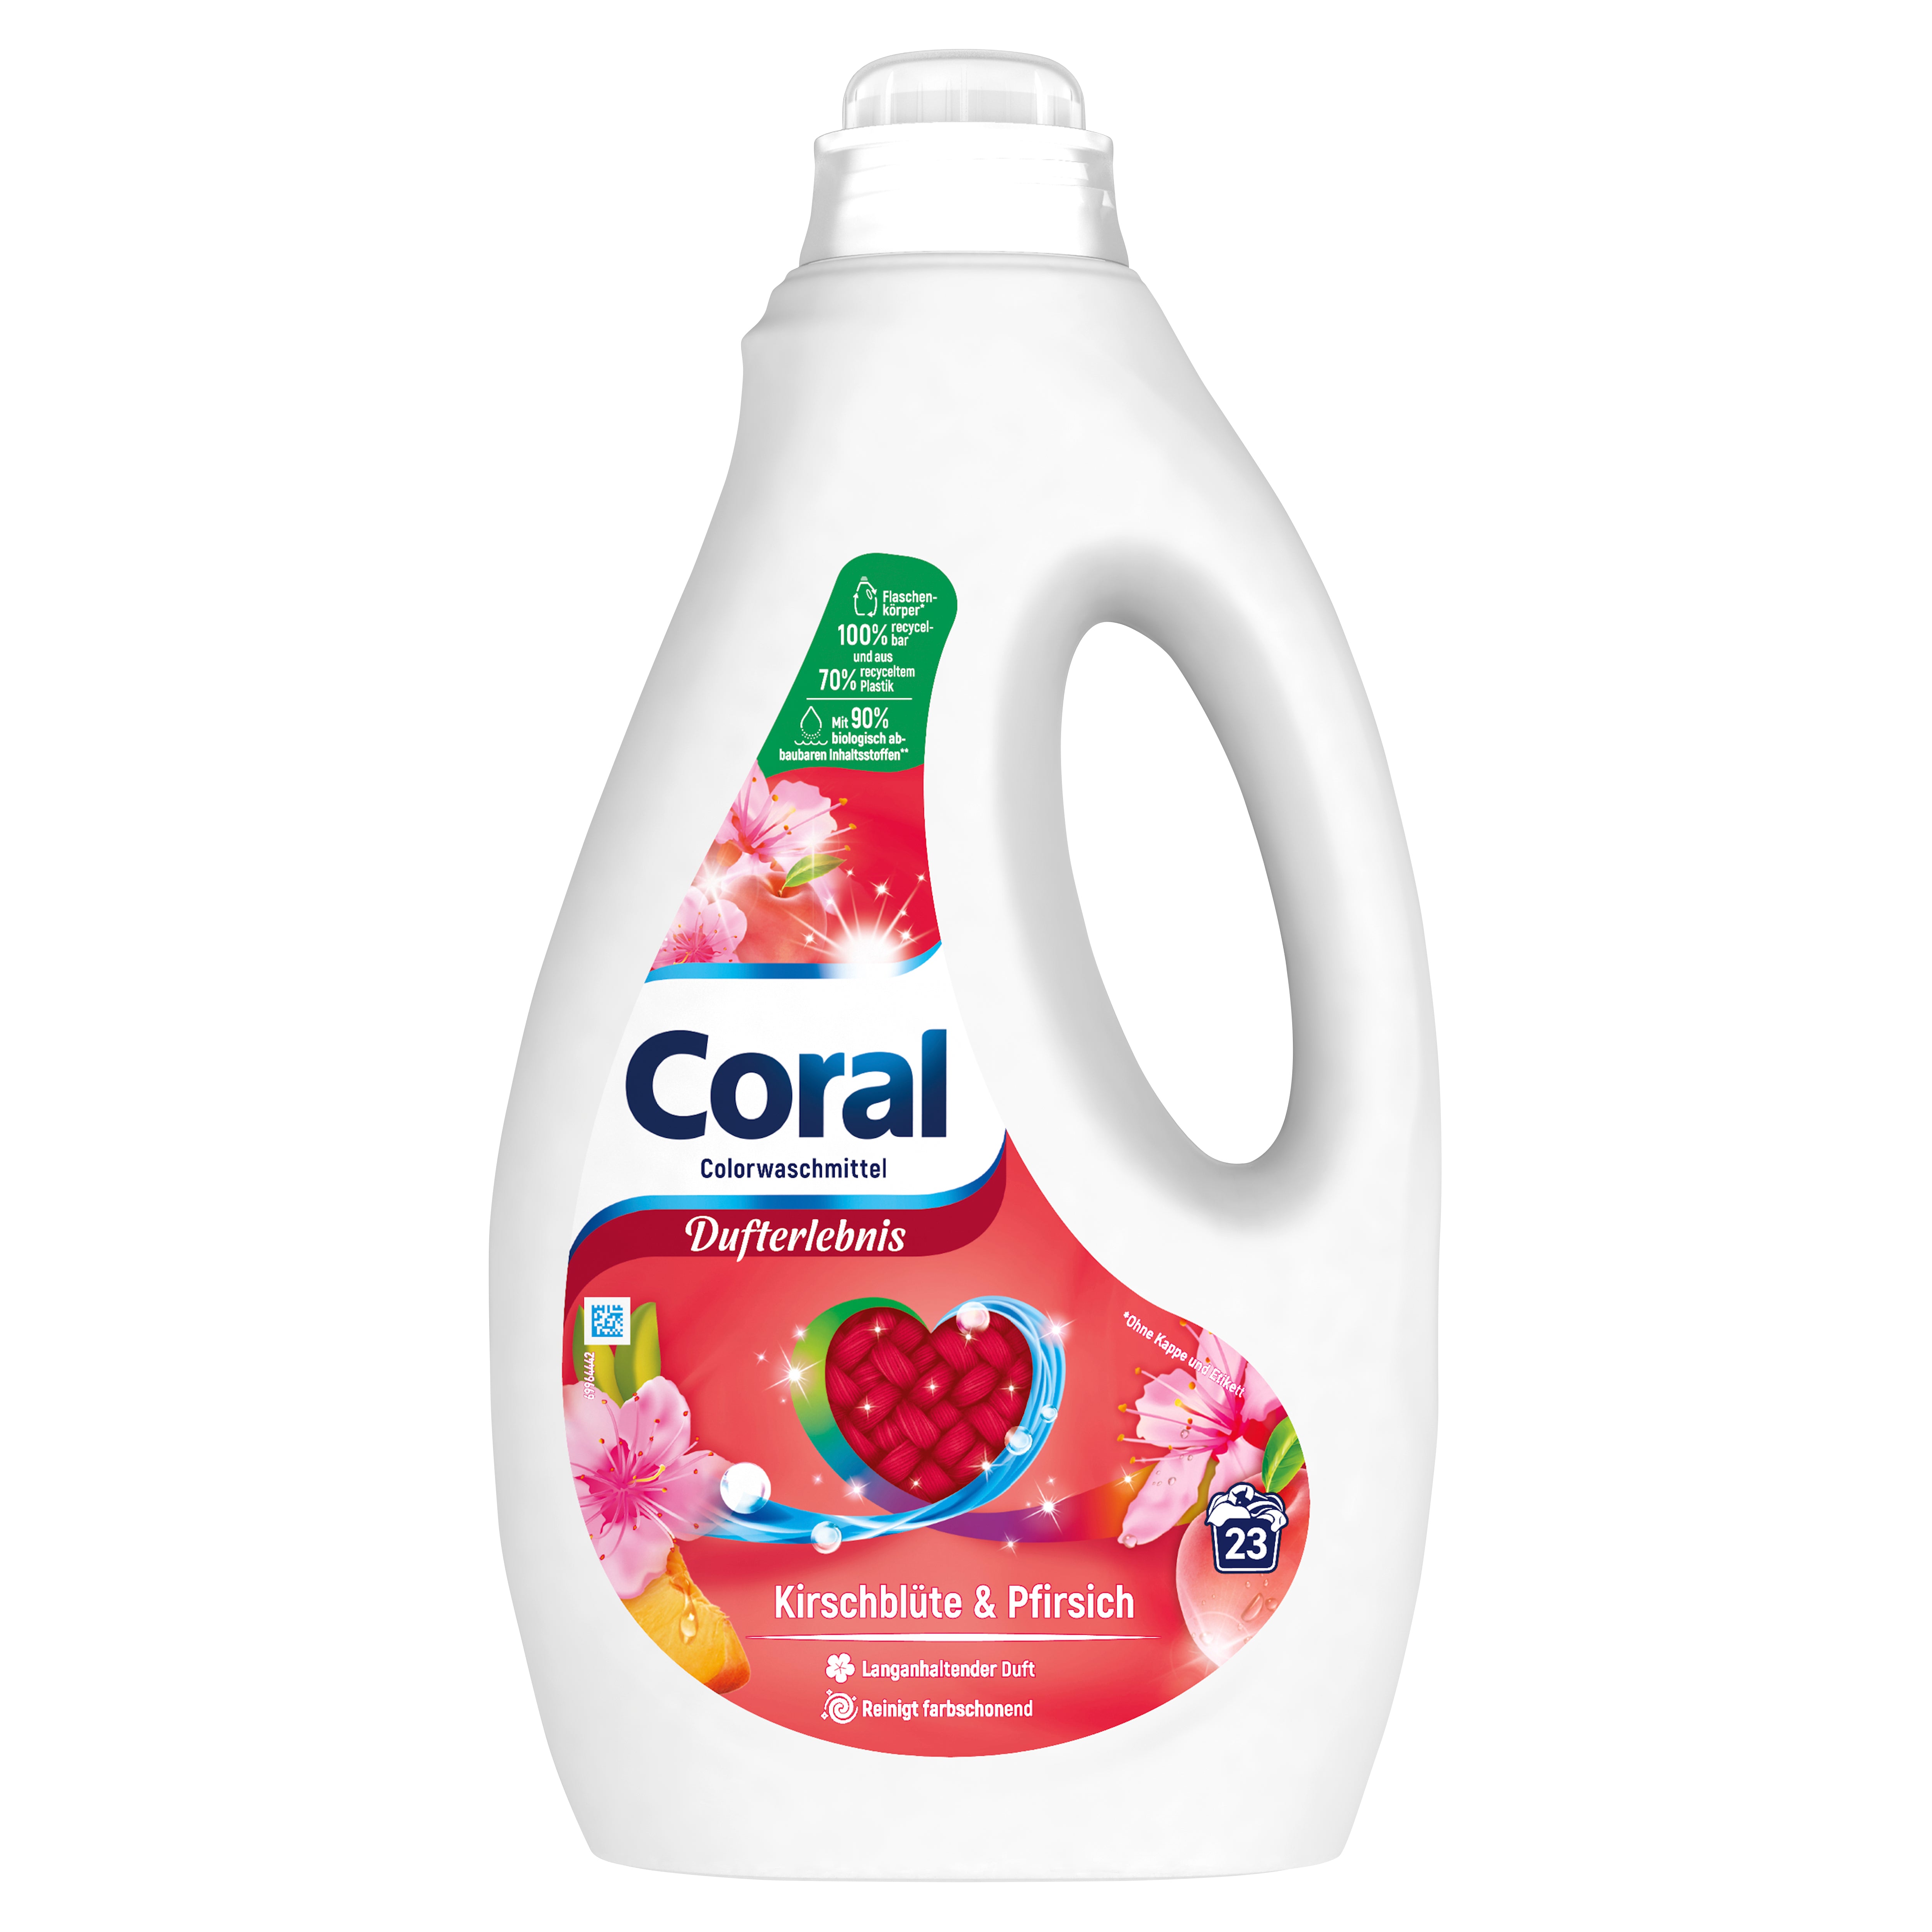 Coral Dufterlebnis Colorwaschmittel Kirschblüte & Pfirsich Flüssigwaschmittel für bunte Wäsche mit langanhaltendem Duft 23 WL 1,15 Liter